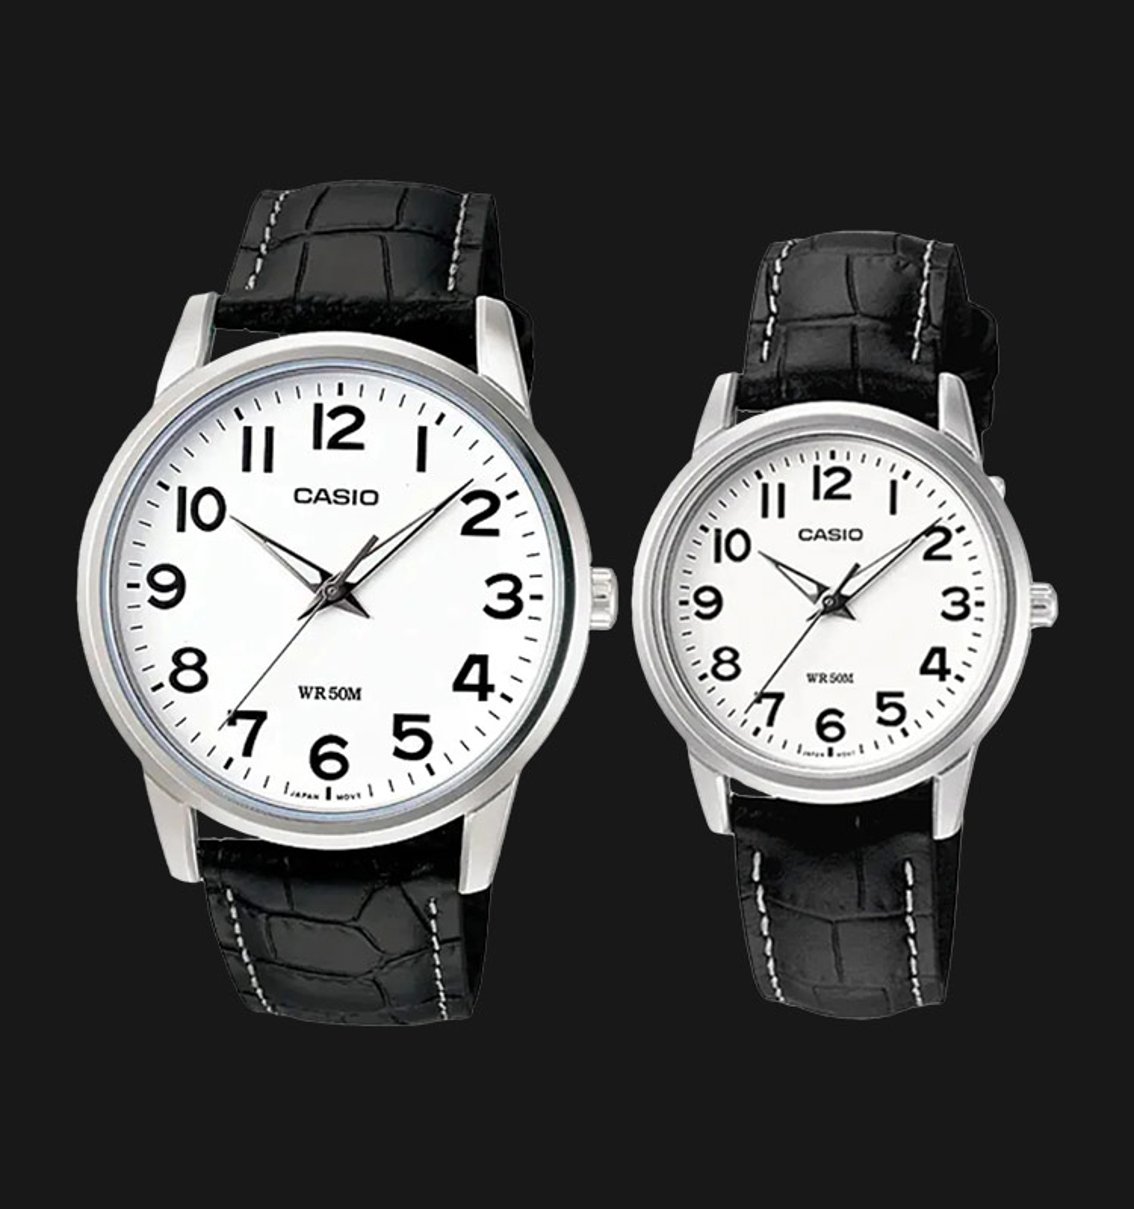 Casio General LTP-1303L-7BVDF & MTP-1303L-7BVDF, Jam tangan couple hadiah valentine dengan harga terjangkau